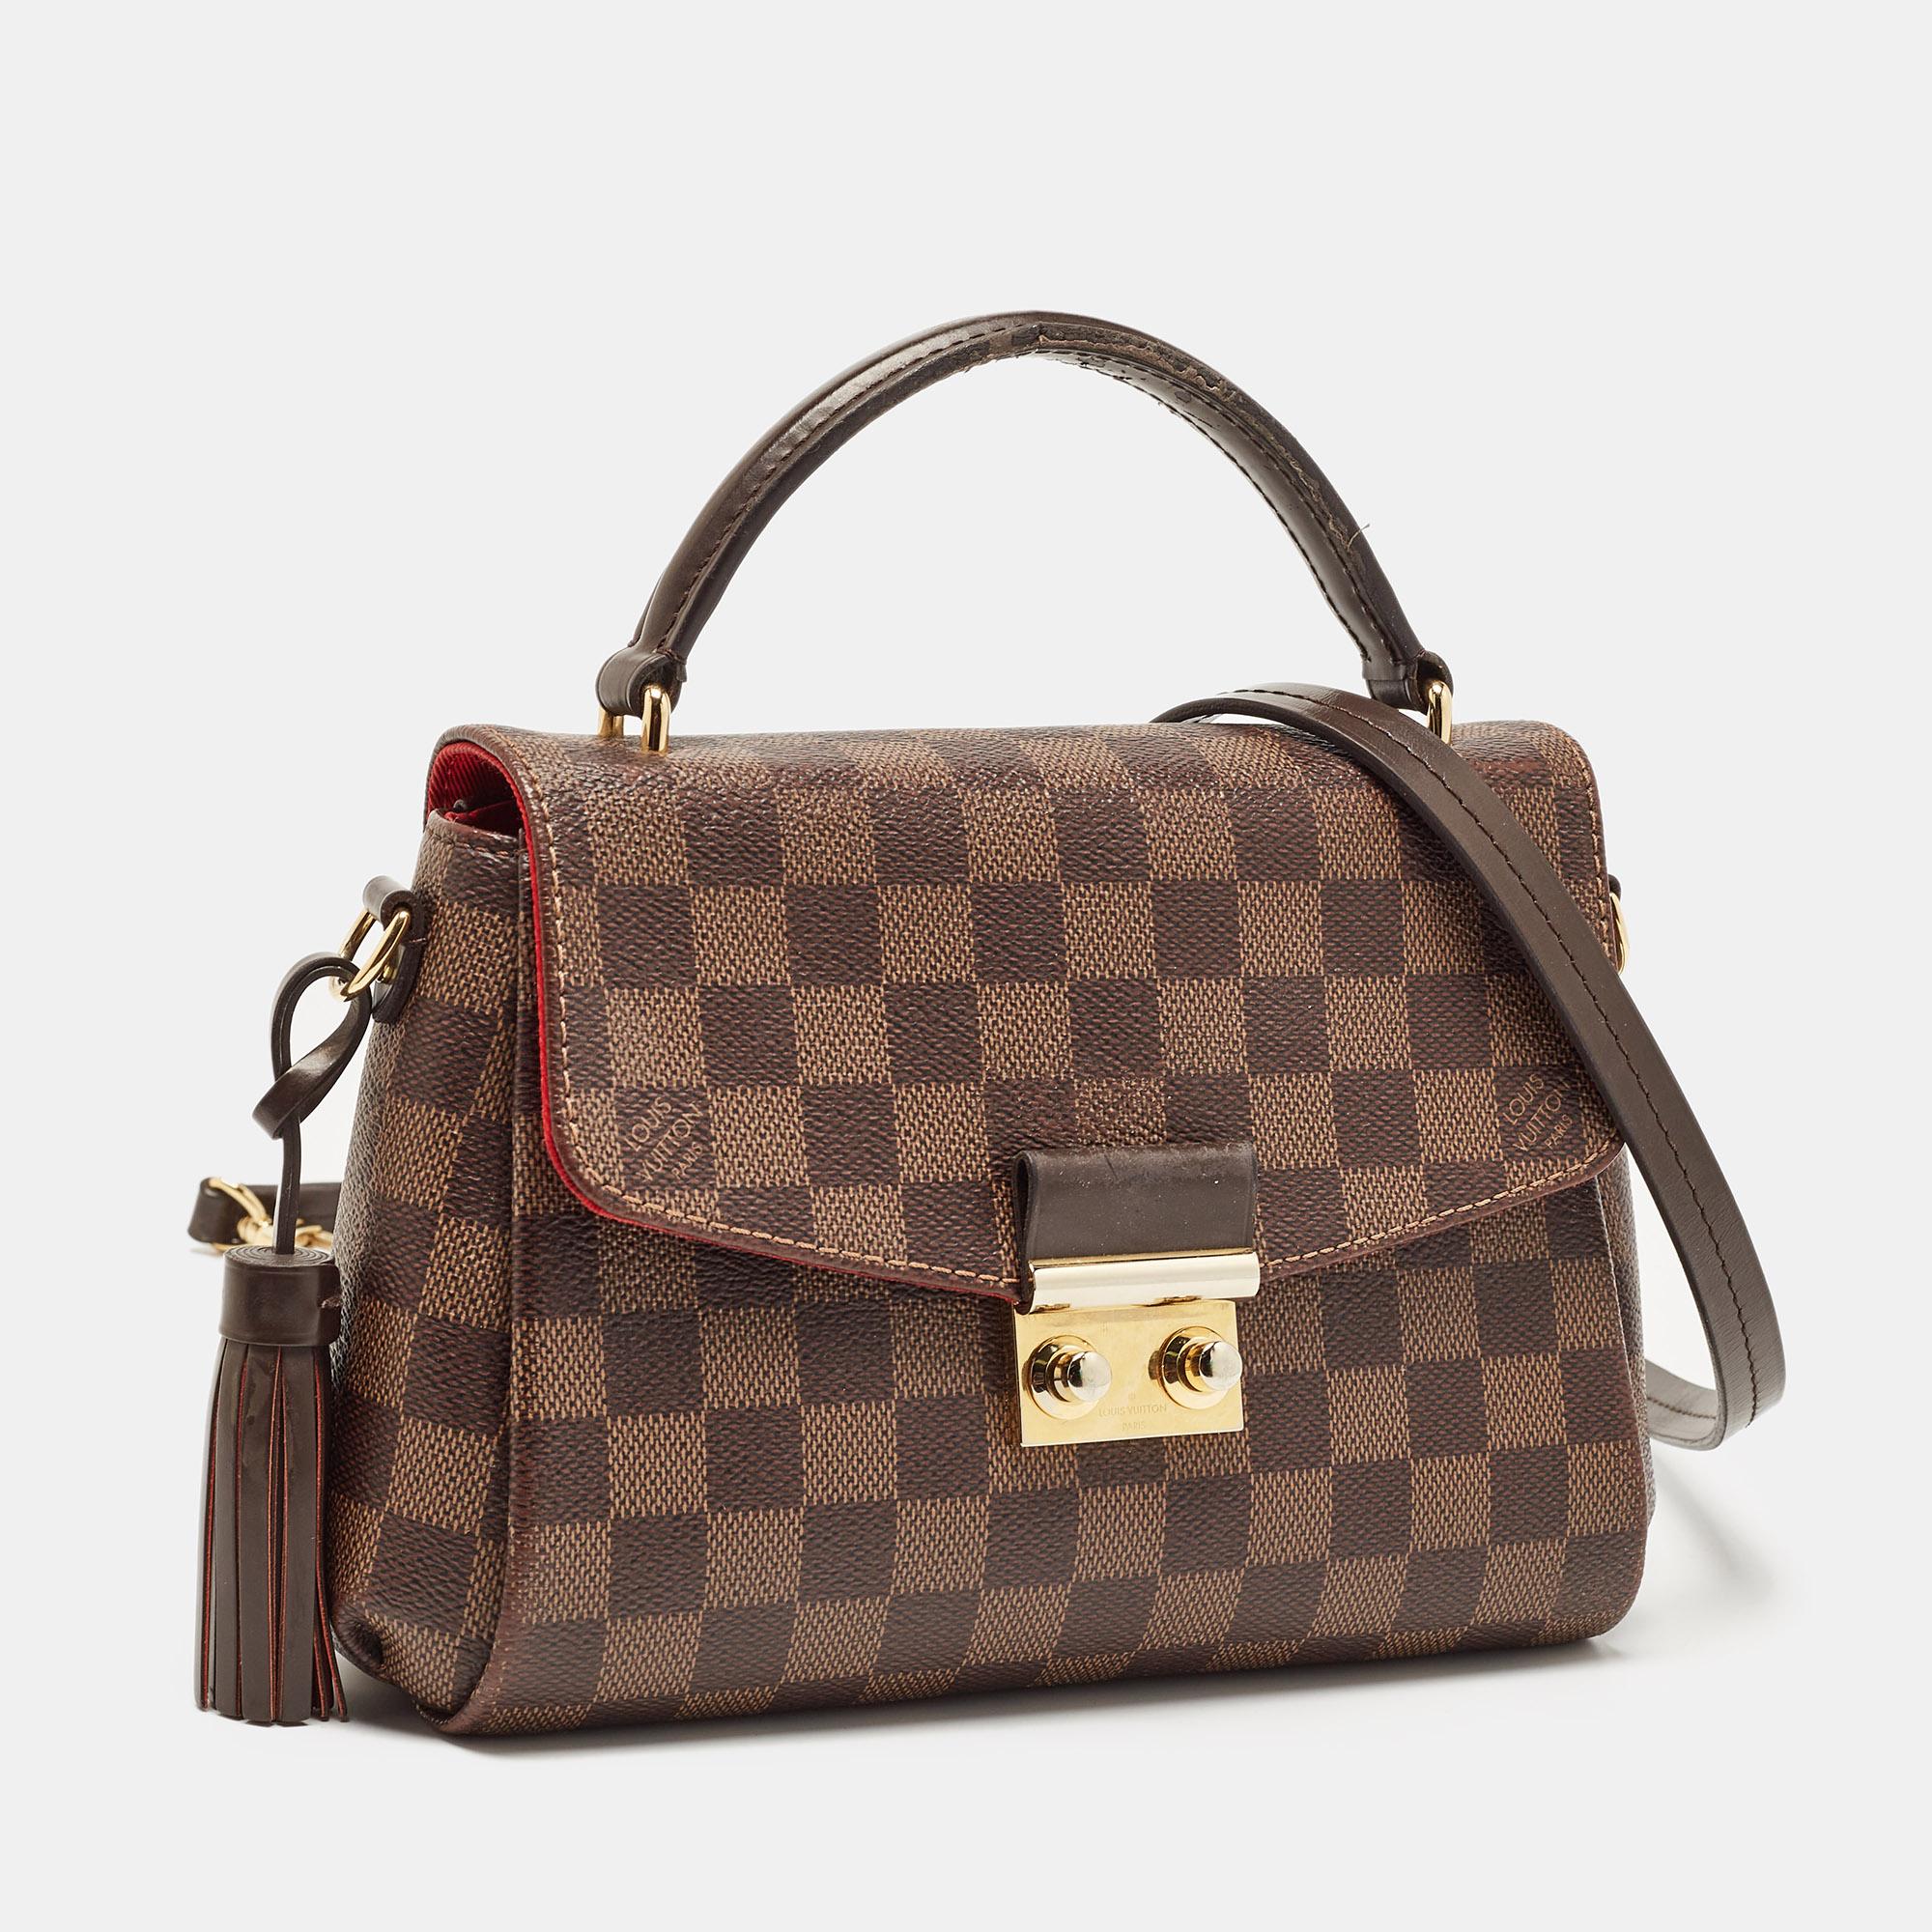 Louis Vuitton Damier Ebene Canvas Croisette Bag In Good Condition For Sale In Dubai, Al Qouz 2